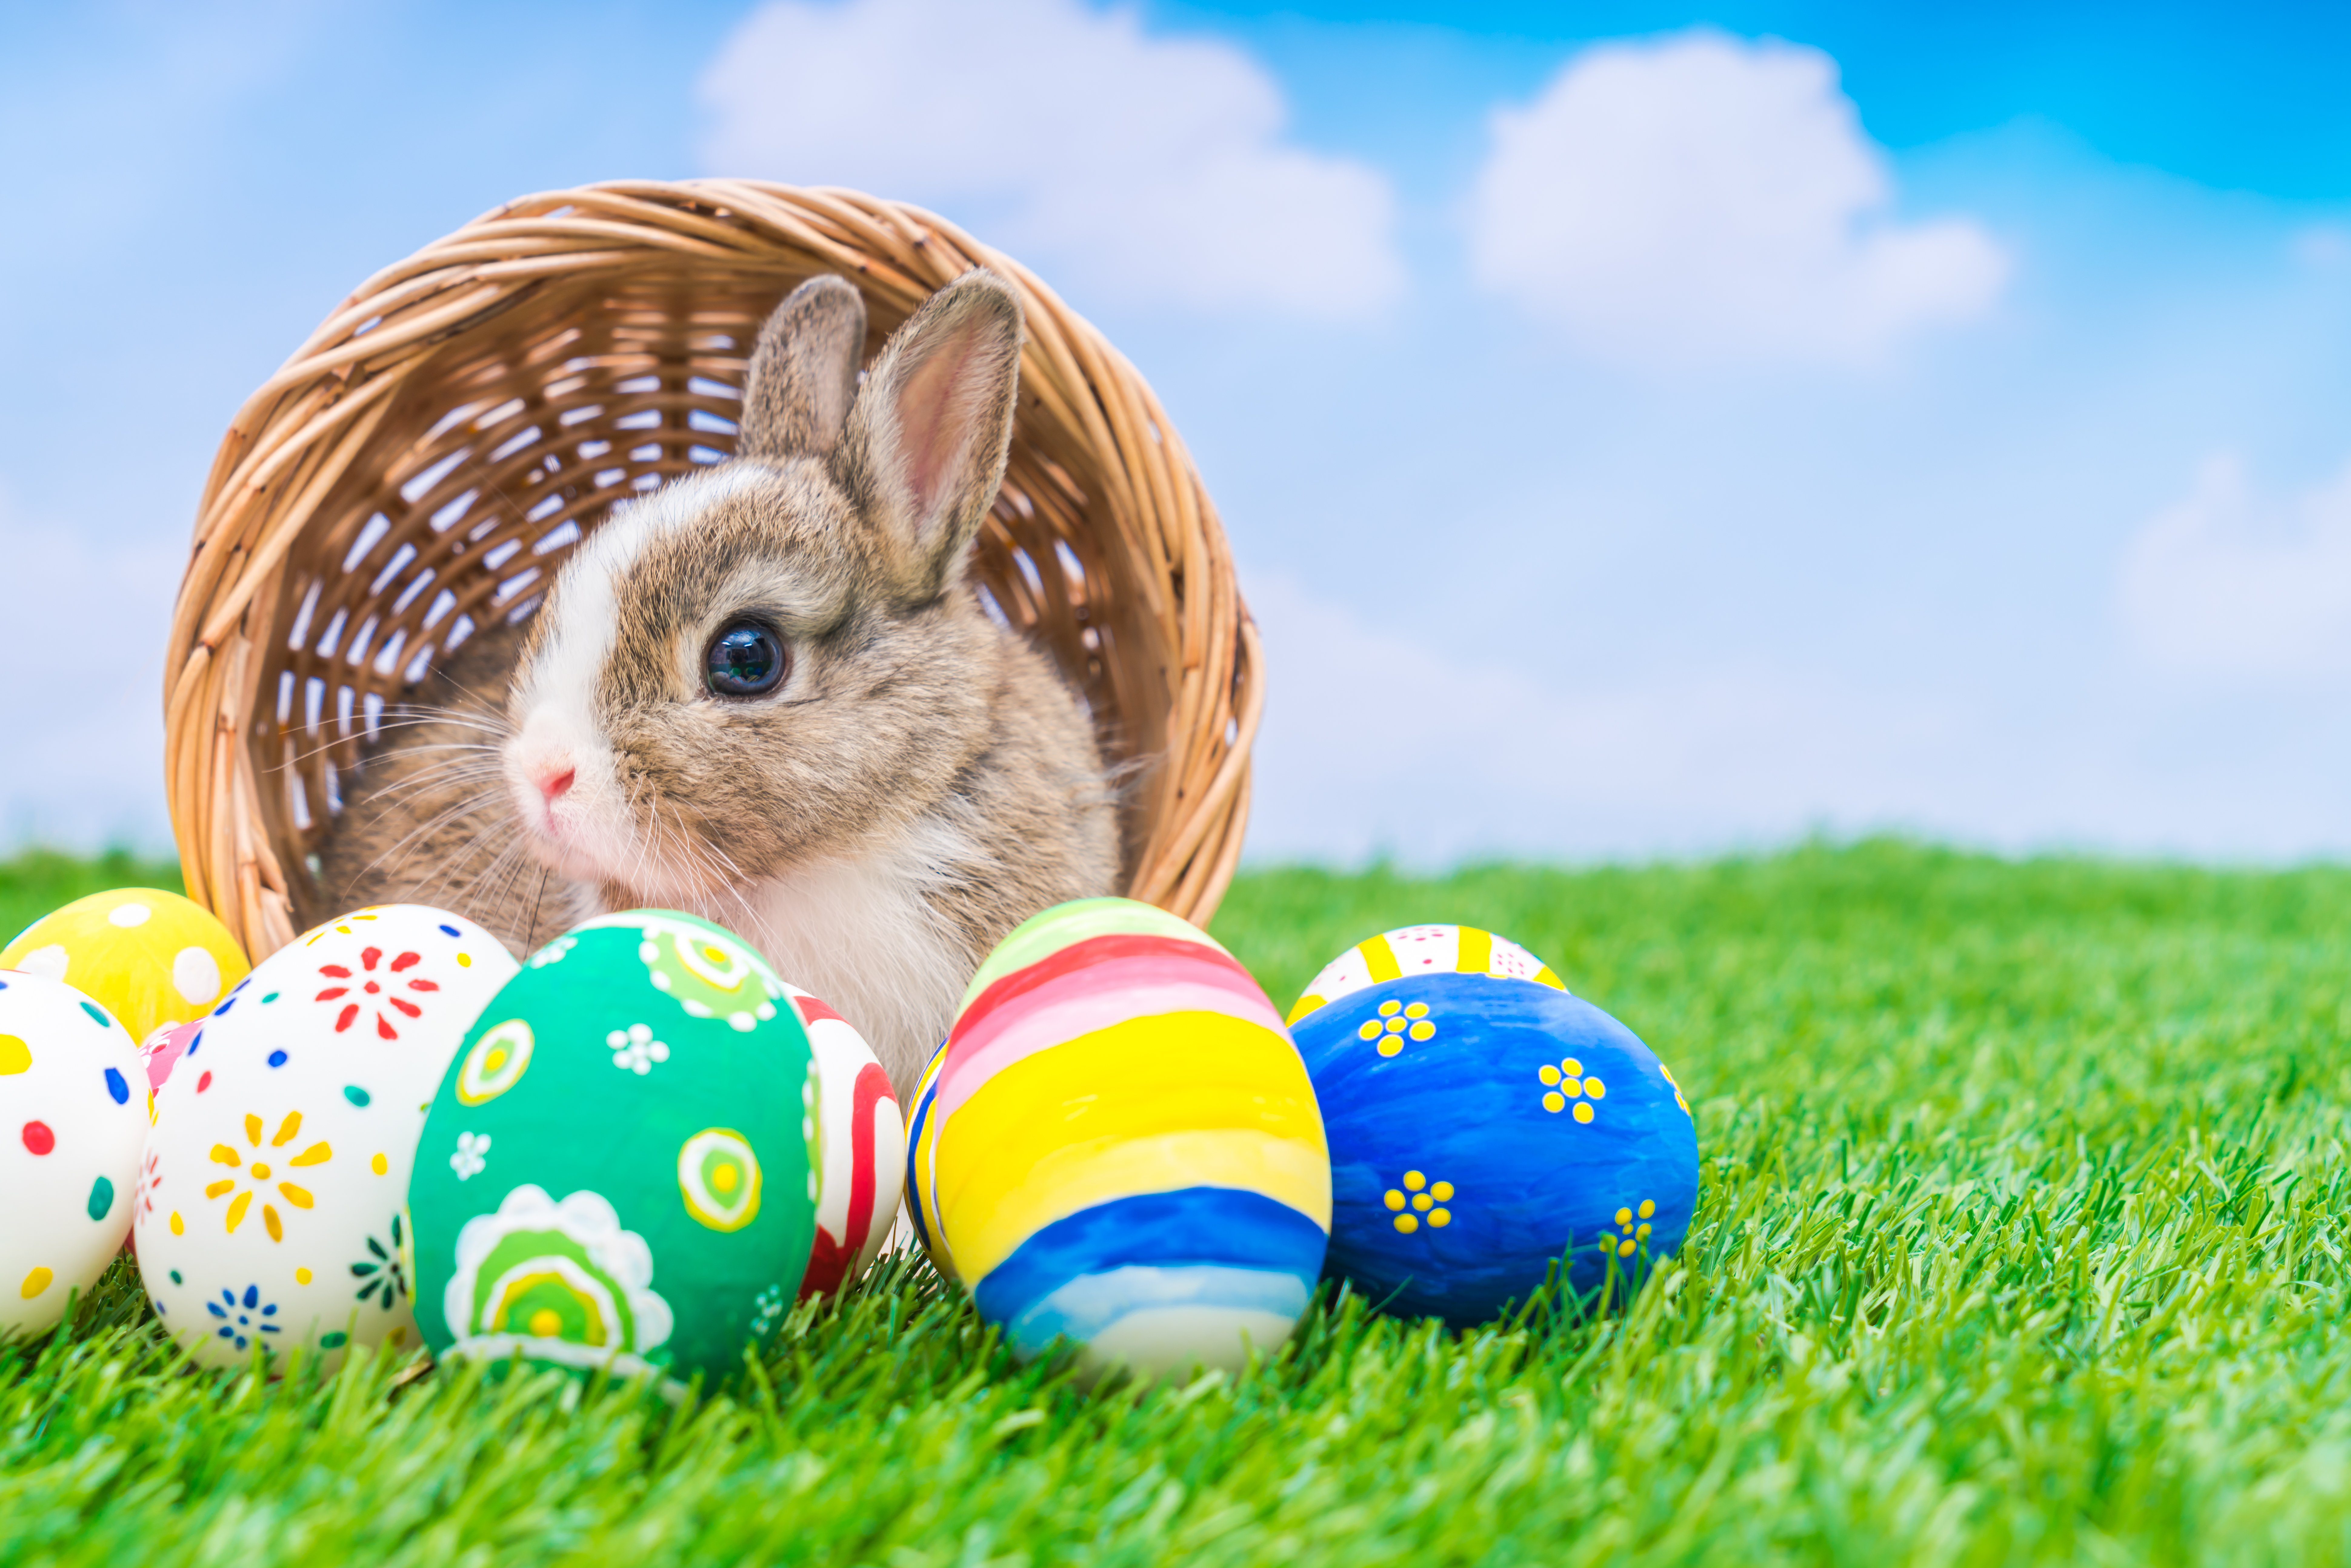 Пасха в 1974 году. Пасхальный кролик Ostern. Easter Bunny — Пасхальный кролик. Пасхальное яйцо. Пасхальный заяц с яйцом.